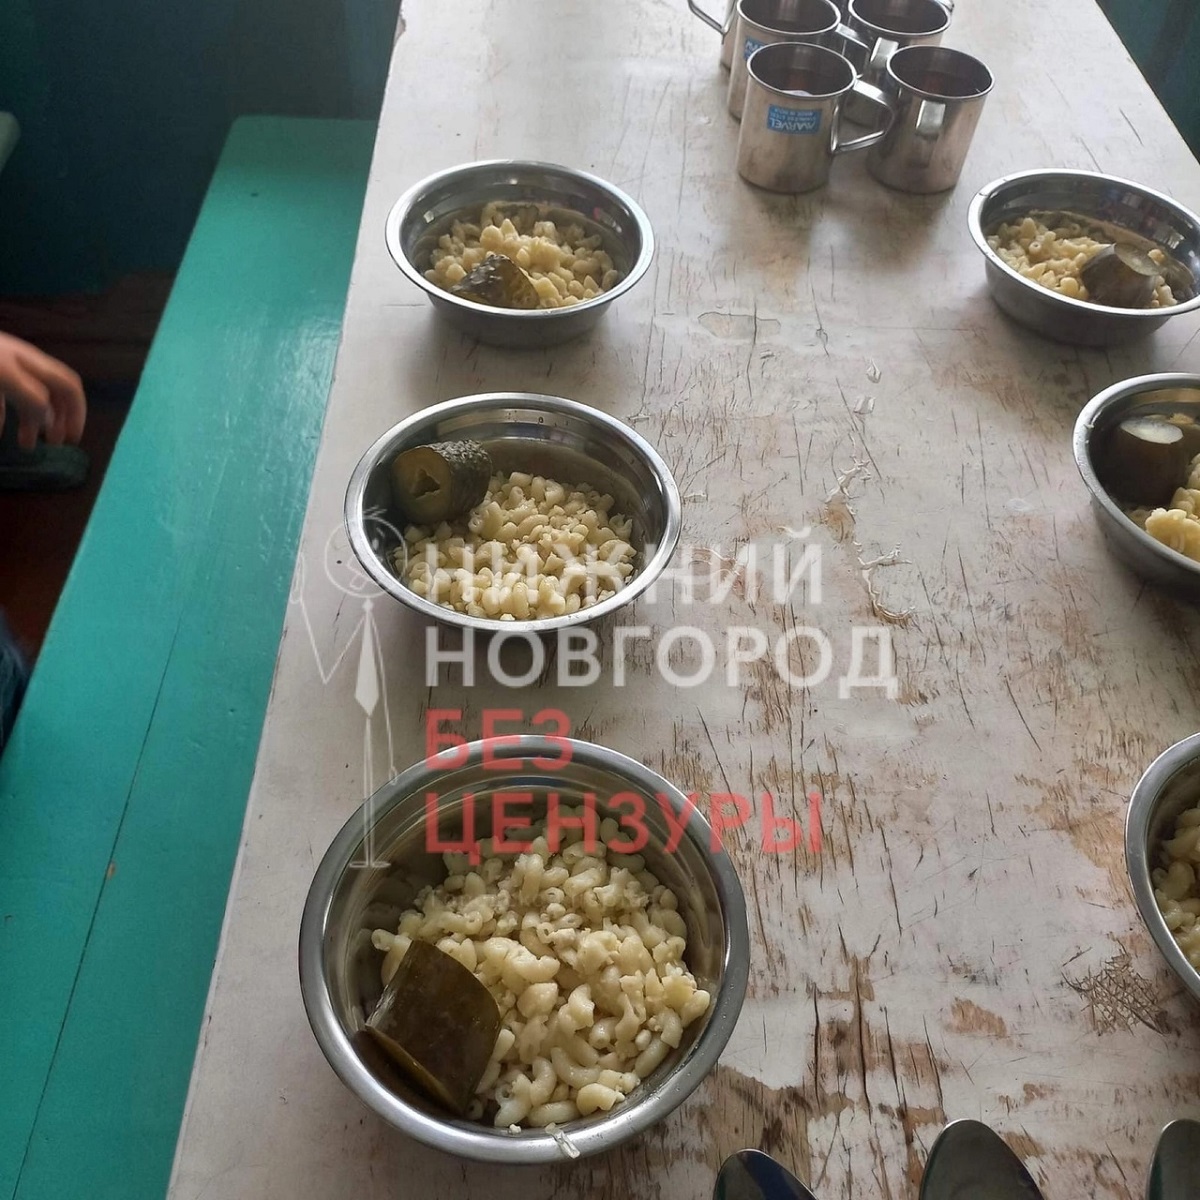 Жители Шахуньи пожаловались на качество обедов в одном из интернатов